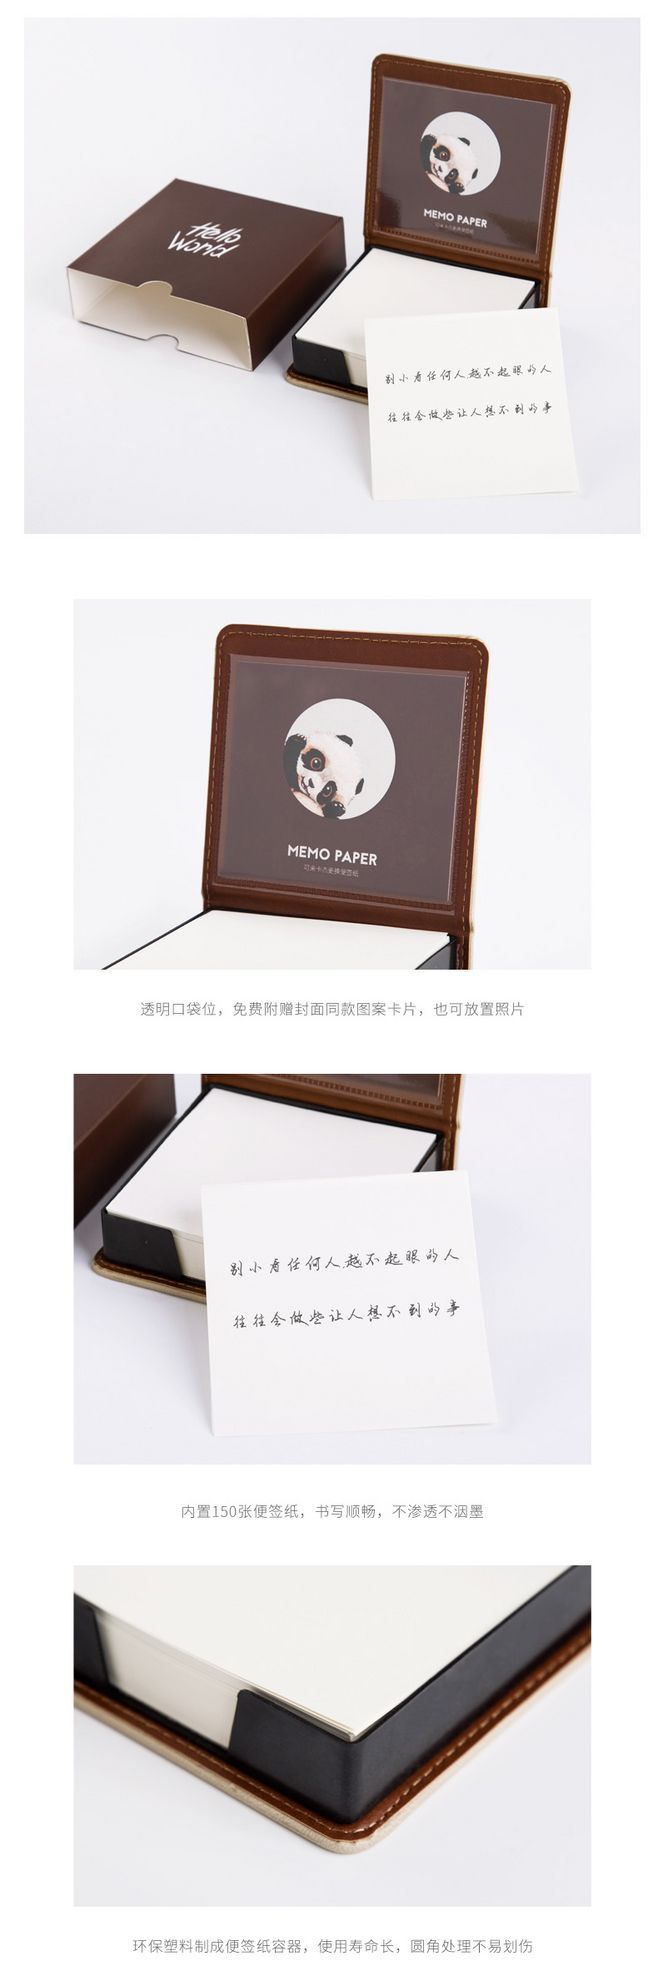 熊猫多功能便签盒